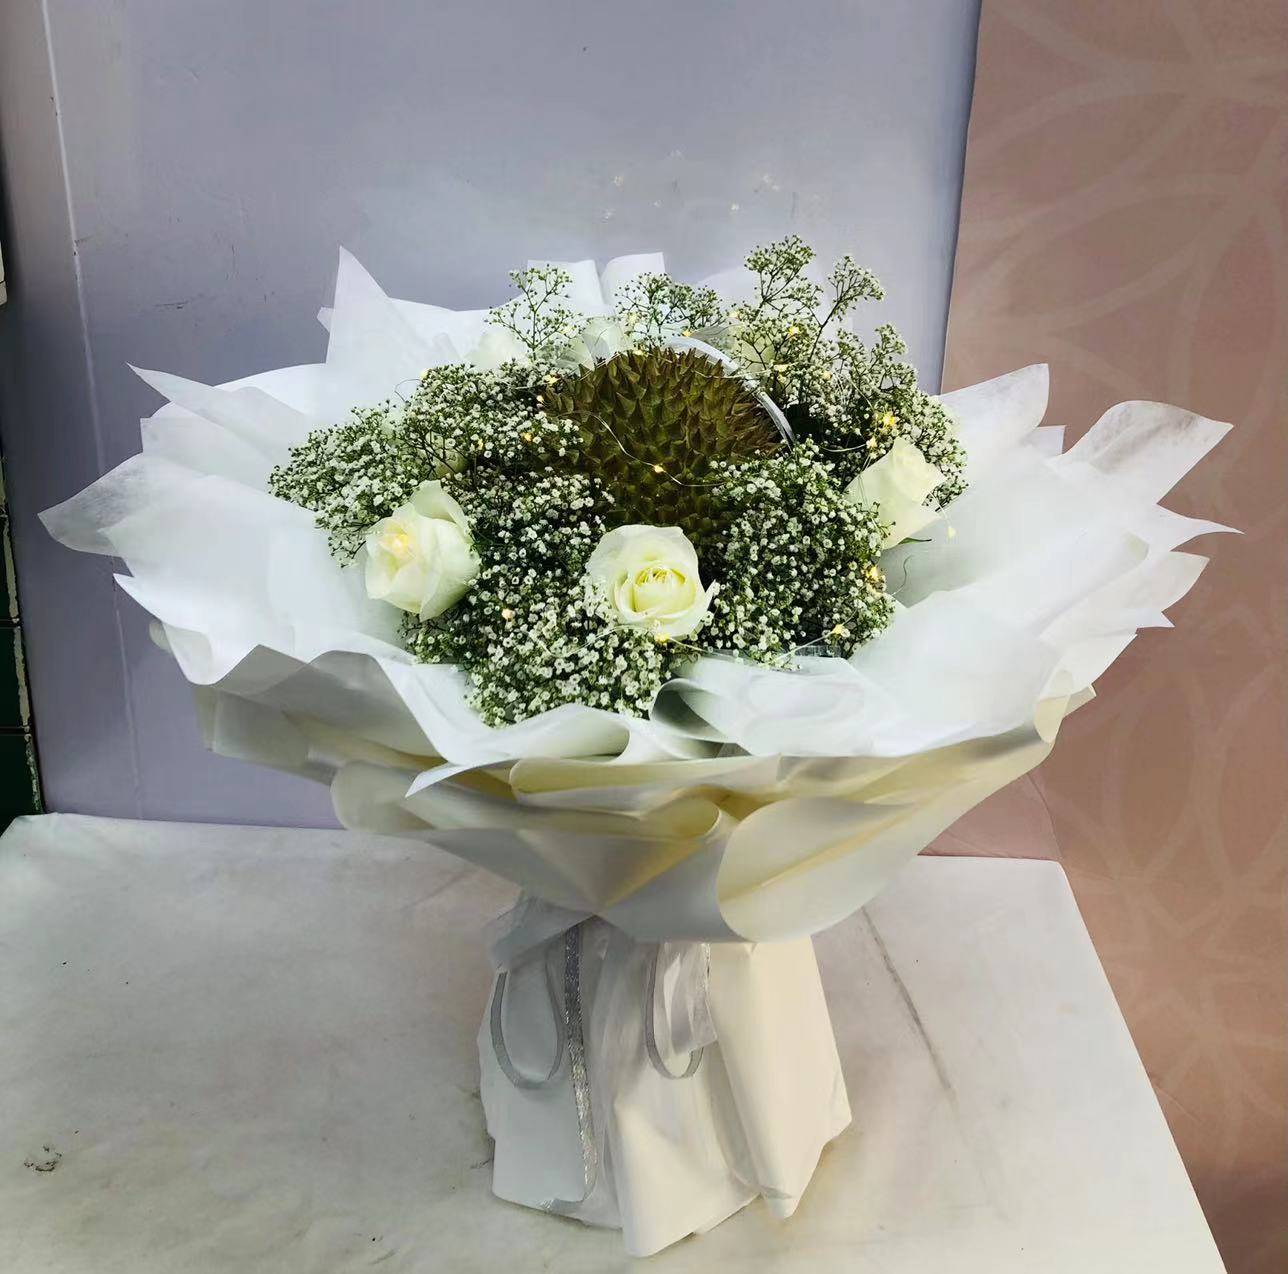 White Rose & Durian Fruit Bouquet | Flower Gift Center